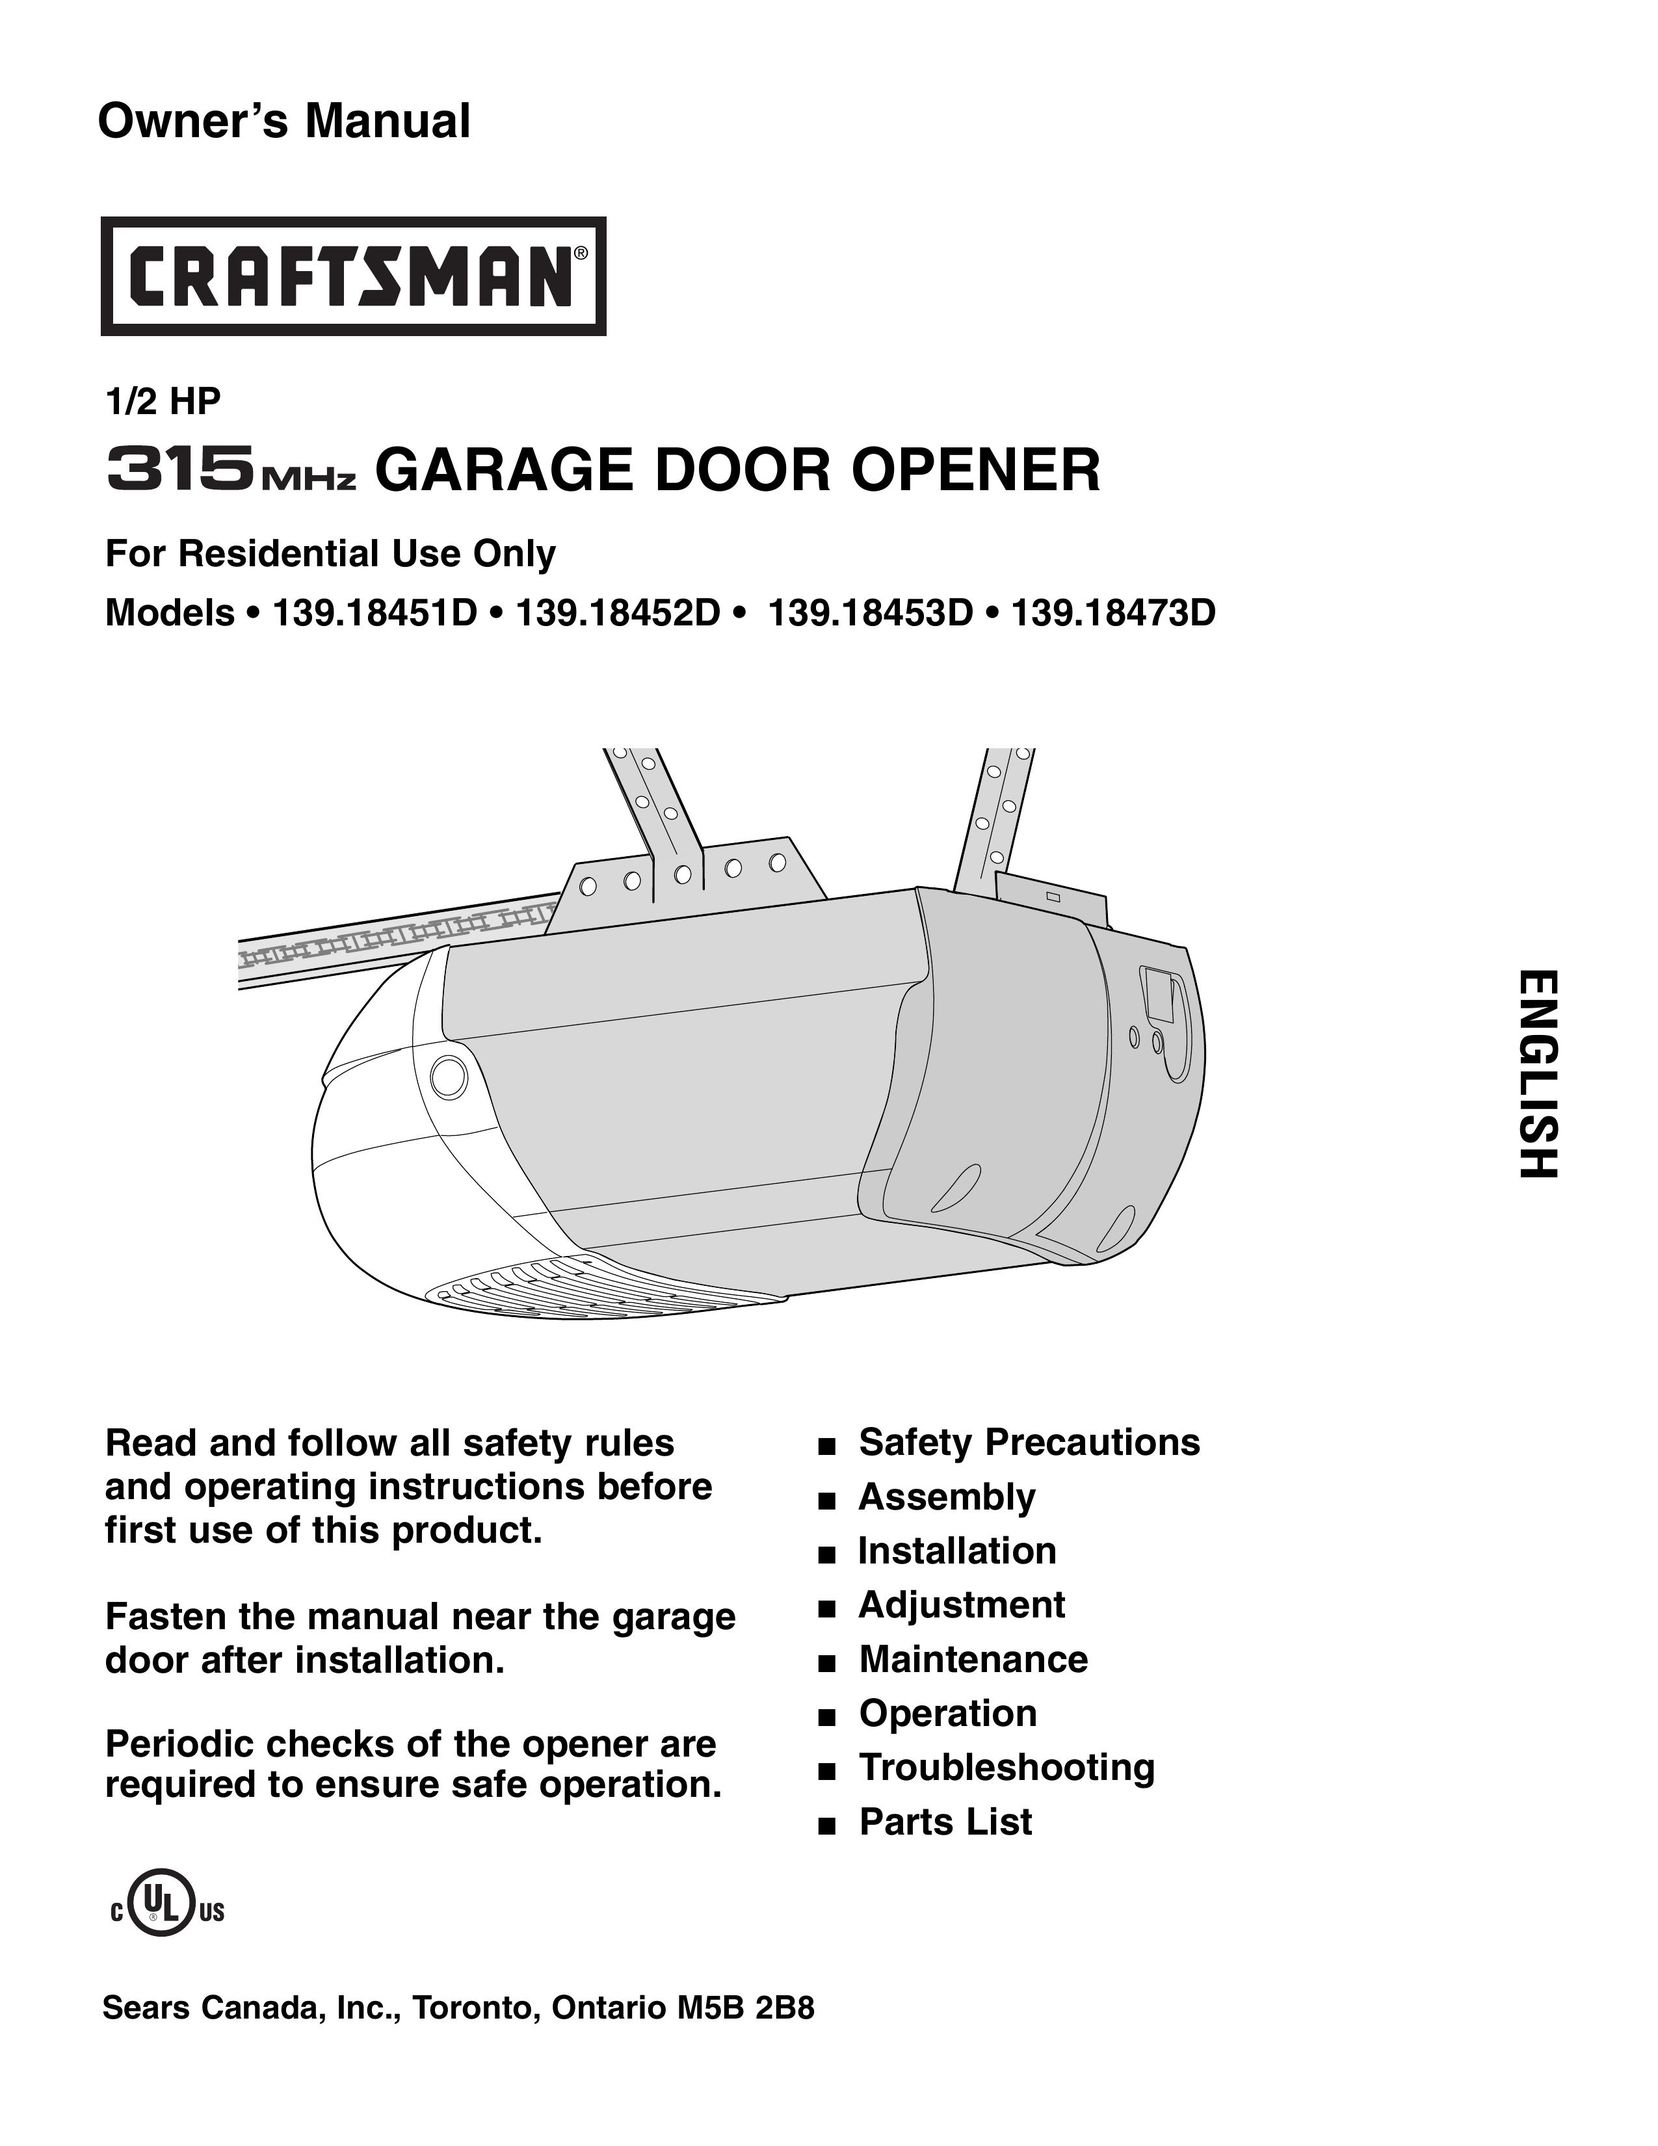 Craftsman 139.18473D Garage Door Opener User Manual